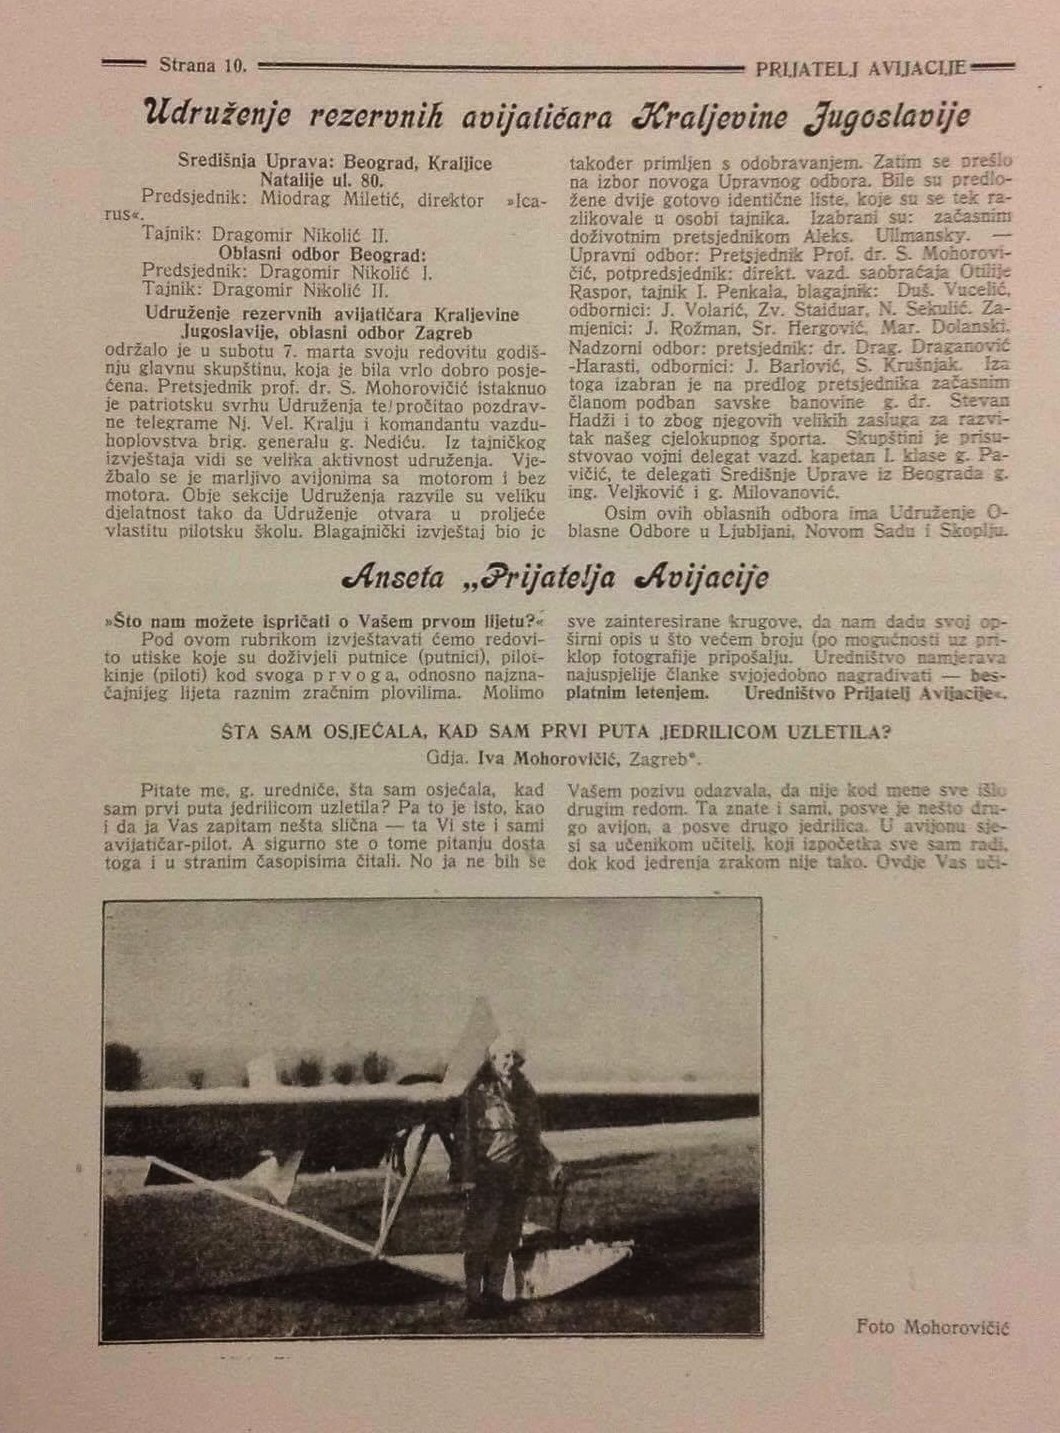 Naslovna strana članka o Ivi Mohorovčić, prvo ženi koja je samostalno letela na avionu bez motora. Članak je izašao u reviji Prijatelj avijacije 1932. godine.